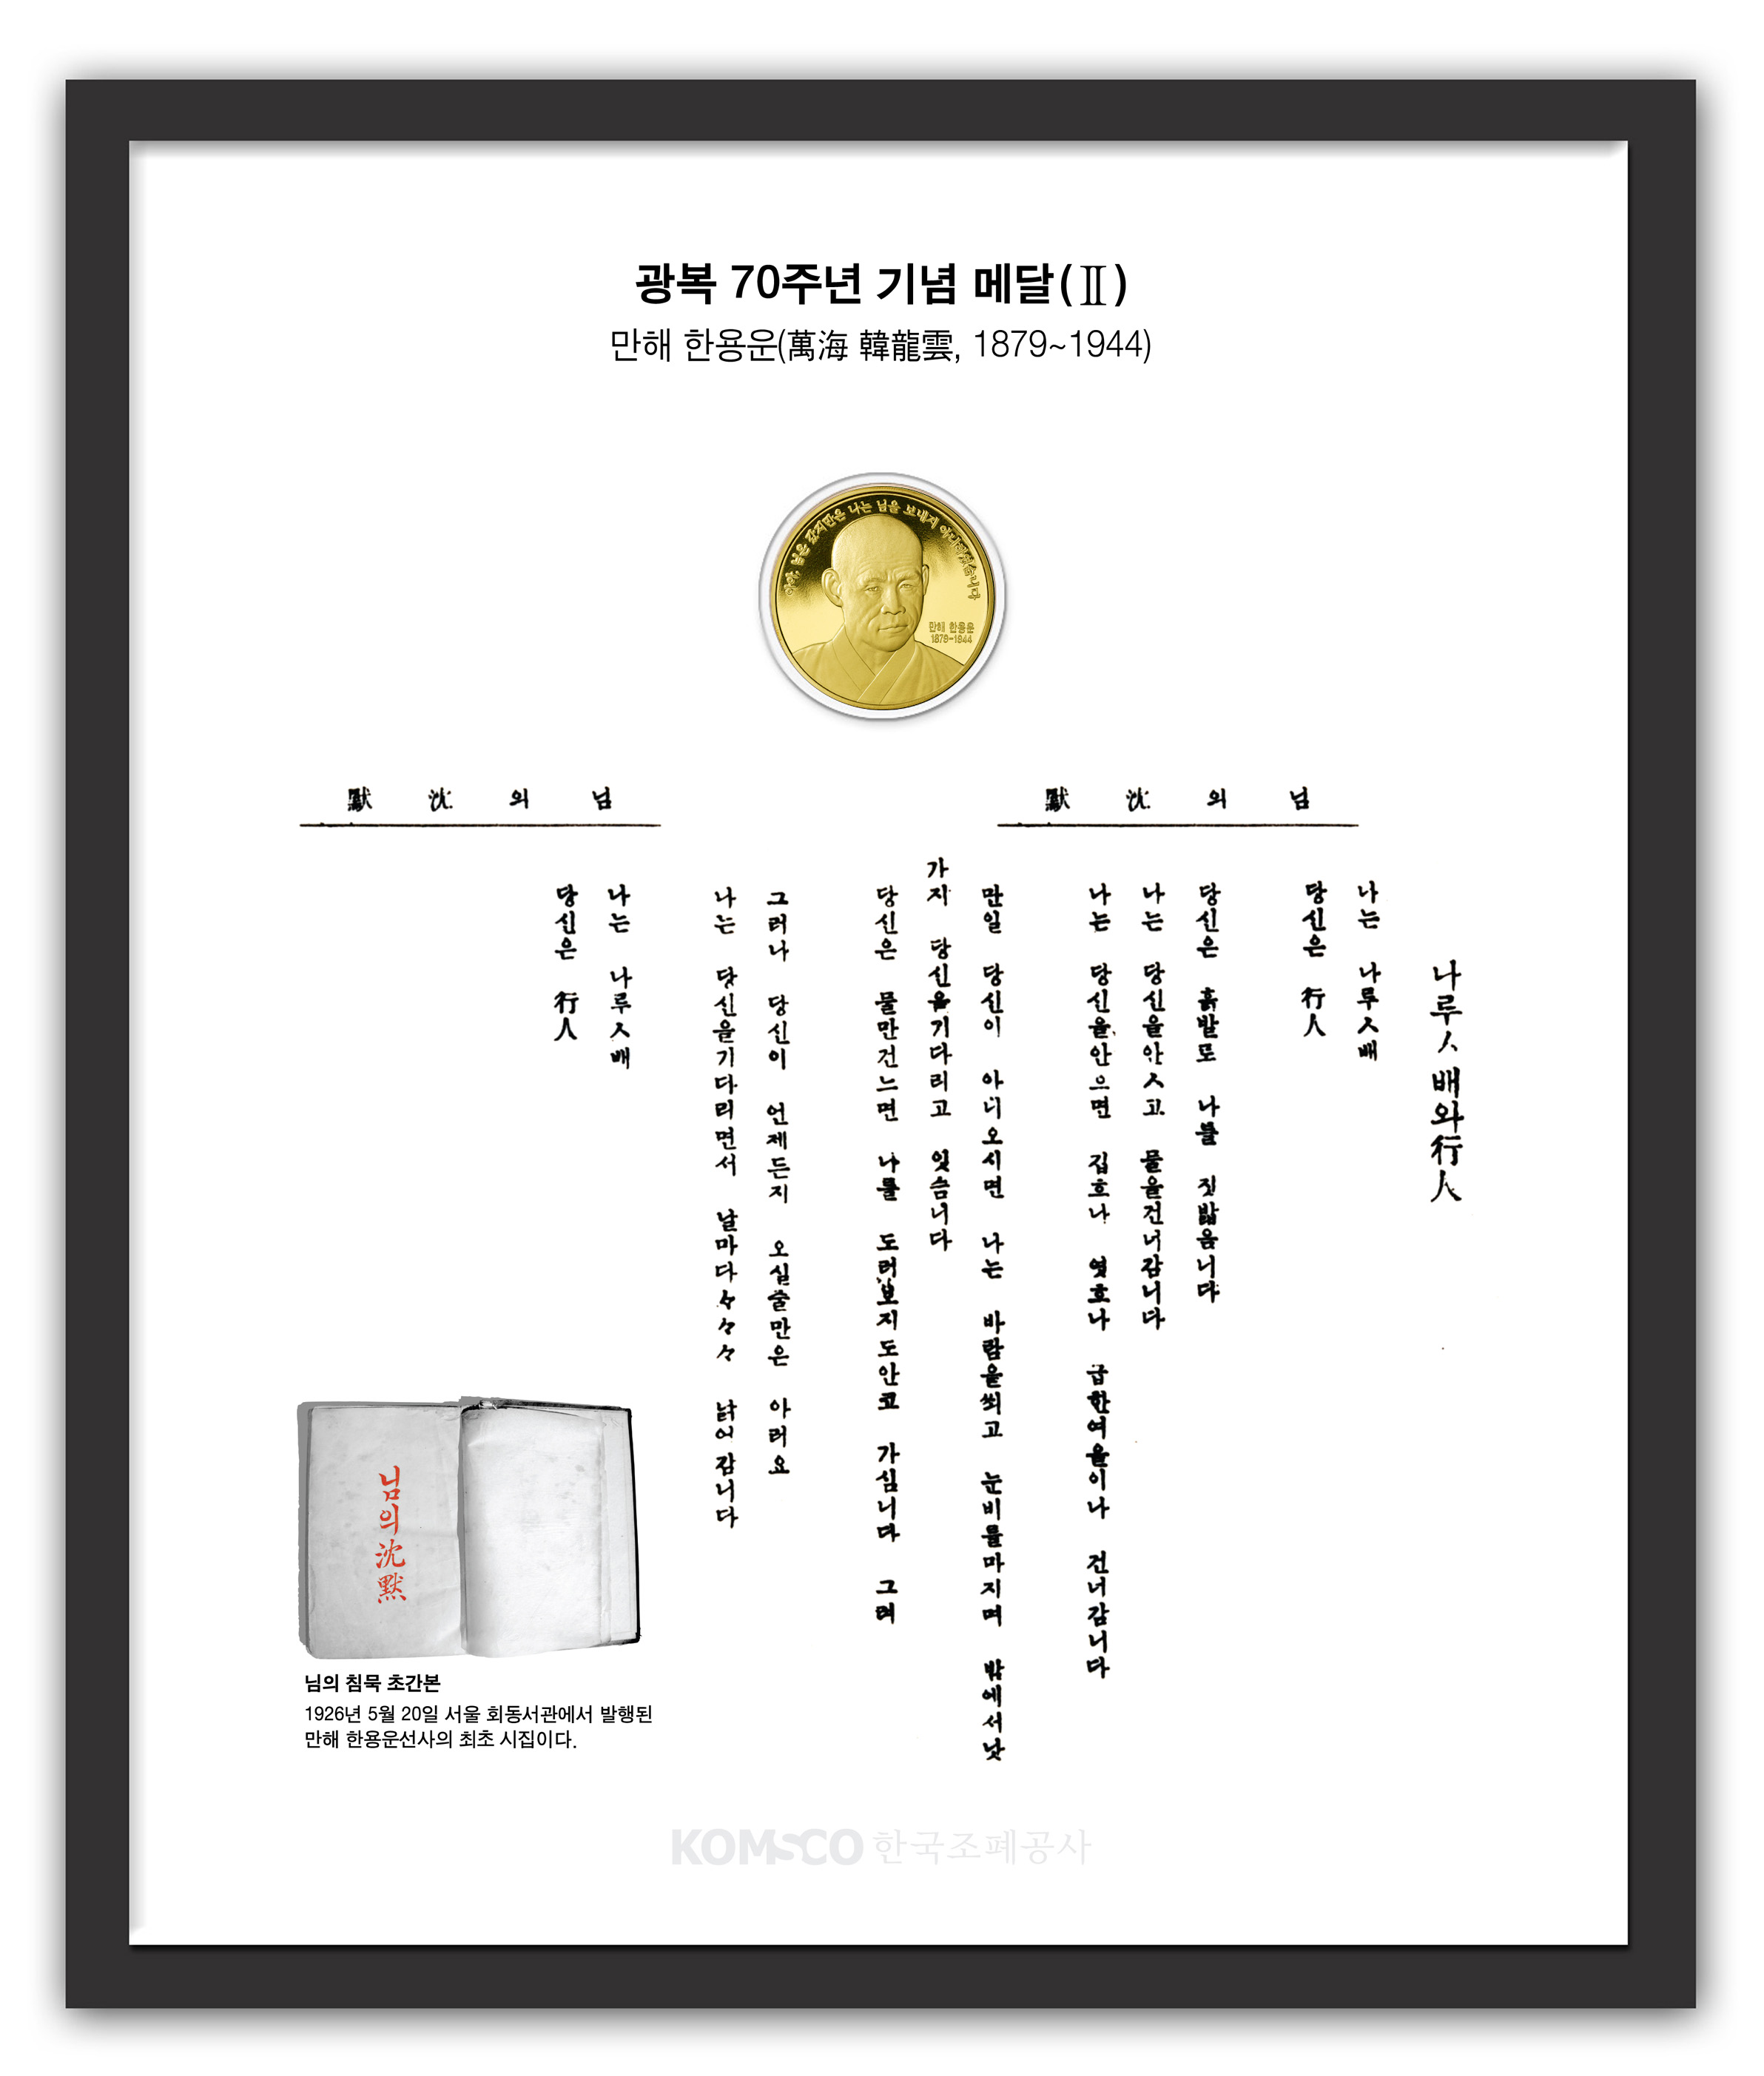 2015033110156808_광복 70주년 기념메달(한용운).jpg